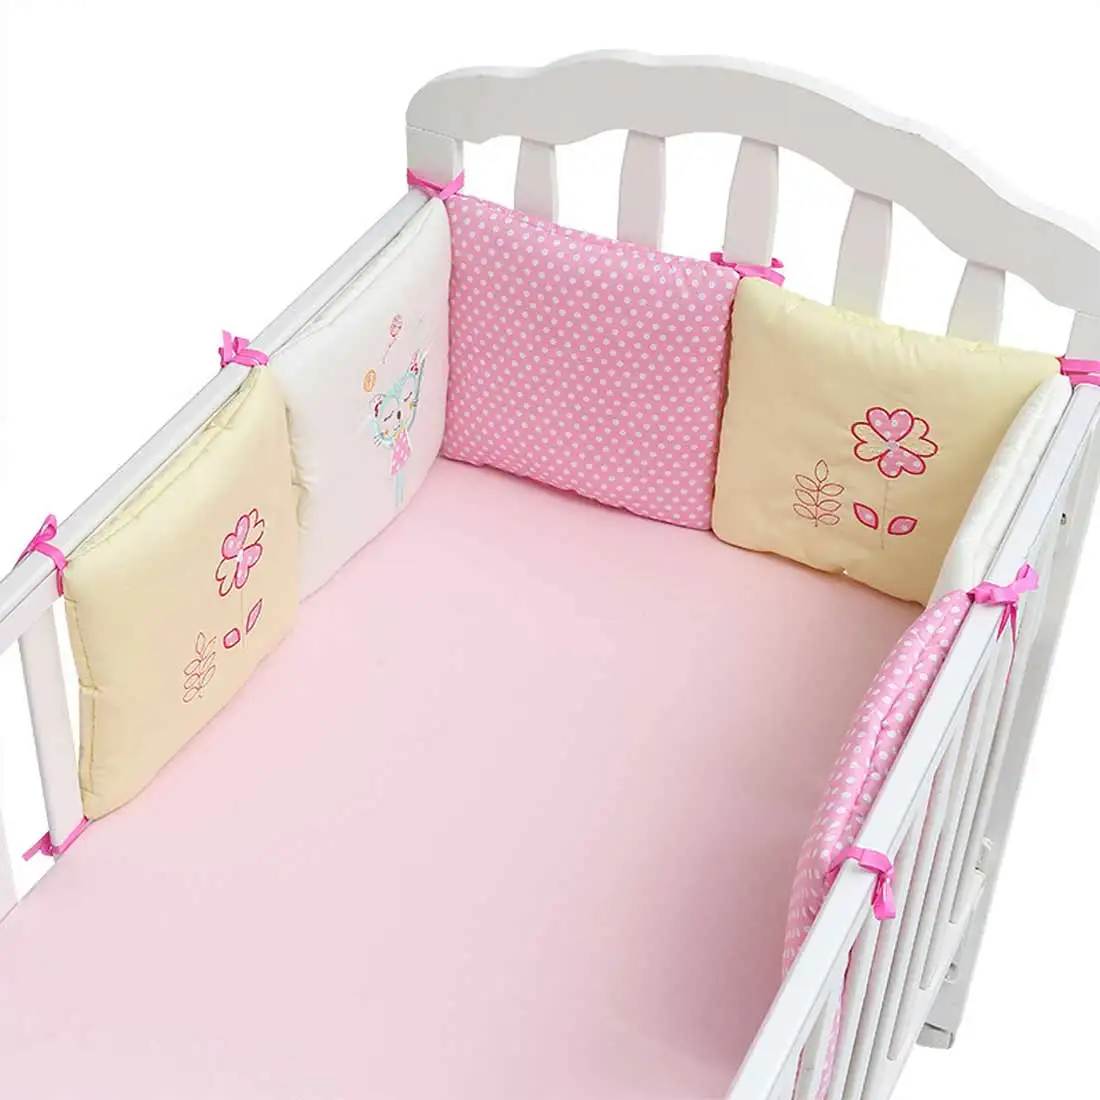 6 шт./партия детская кровать протектор кроватки бамперы детская кровать бампер в детская кроватка бампер Безопасность хлопок смесь детские постельные принадлежности набор - Цвет: 2